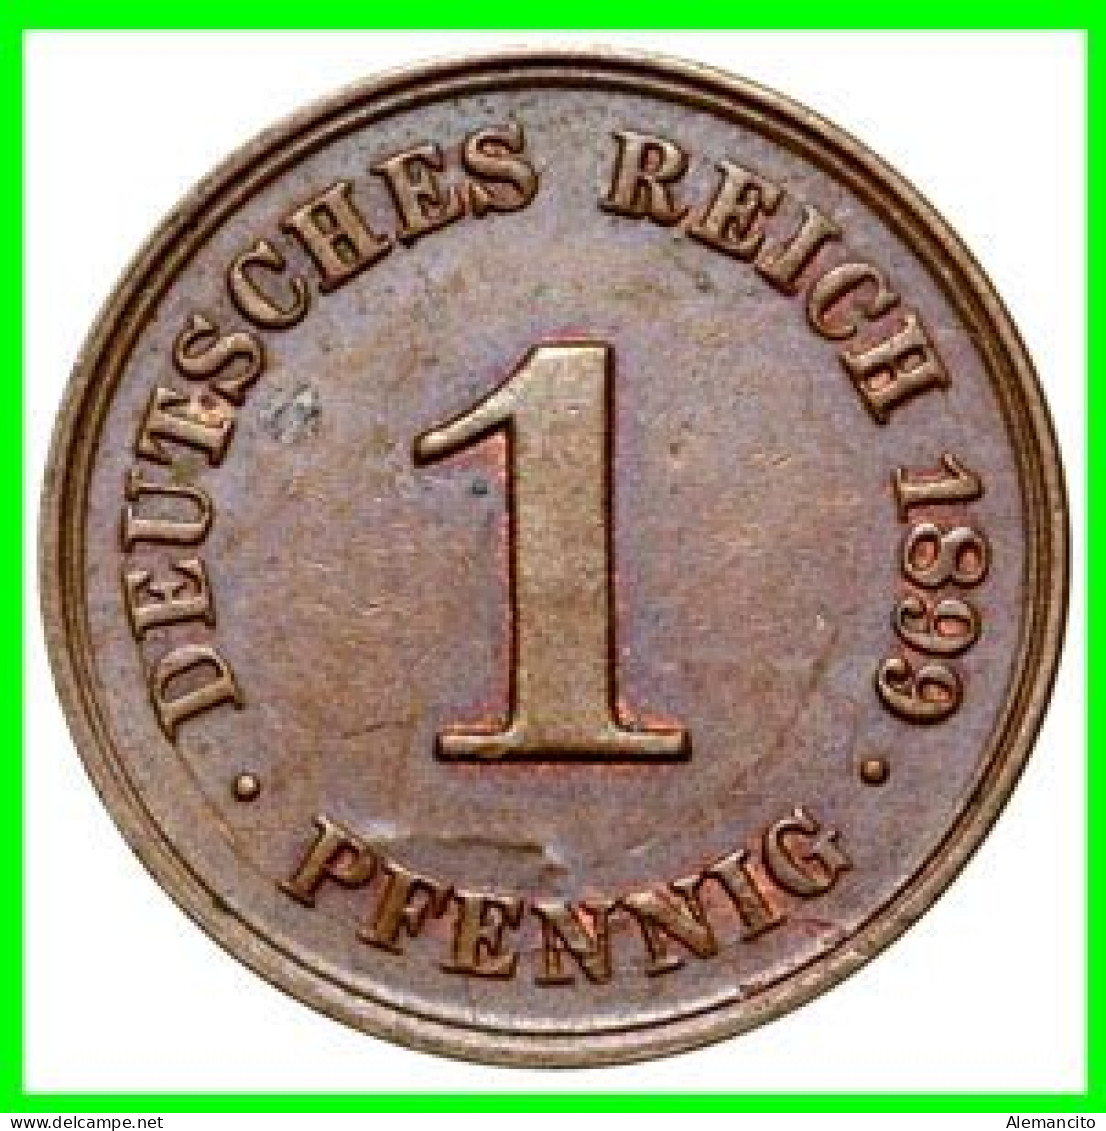 ALEMANIA – GERMANY - IMPERIO MONEDA DE COBRE DIAMETRO 17.5 Mm. DEL AÑO 1899 – CECA-A- KM-10  GOBERNANTE: WILHELM II - 1 Pfennig